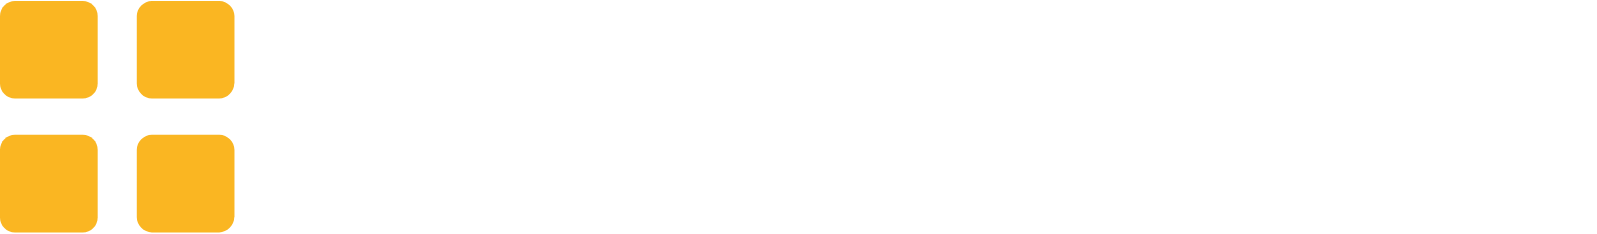 Greggs Logo groß für dunkle Hintergründe (transparentes PNG)